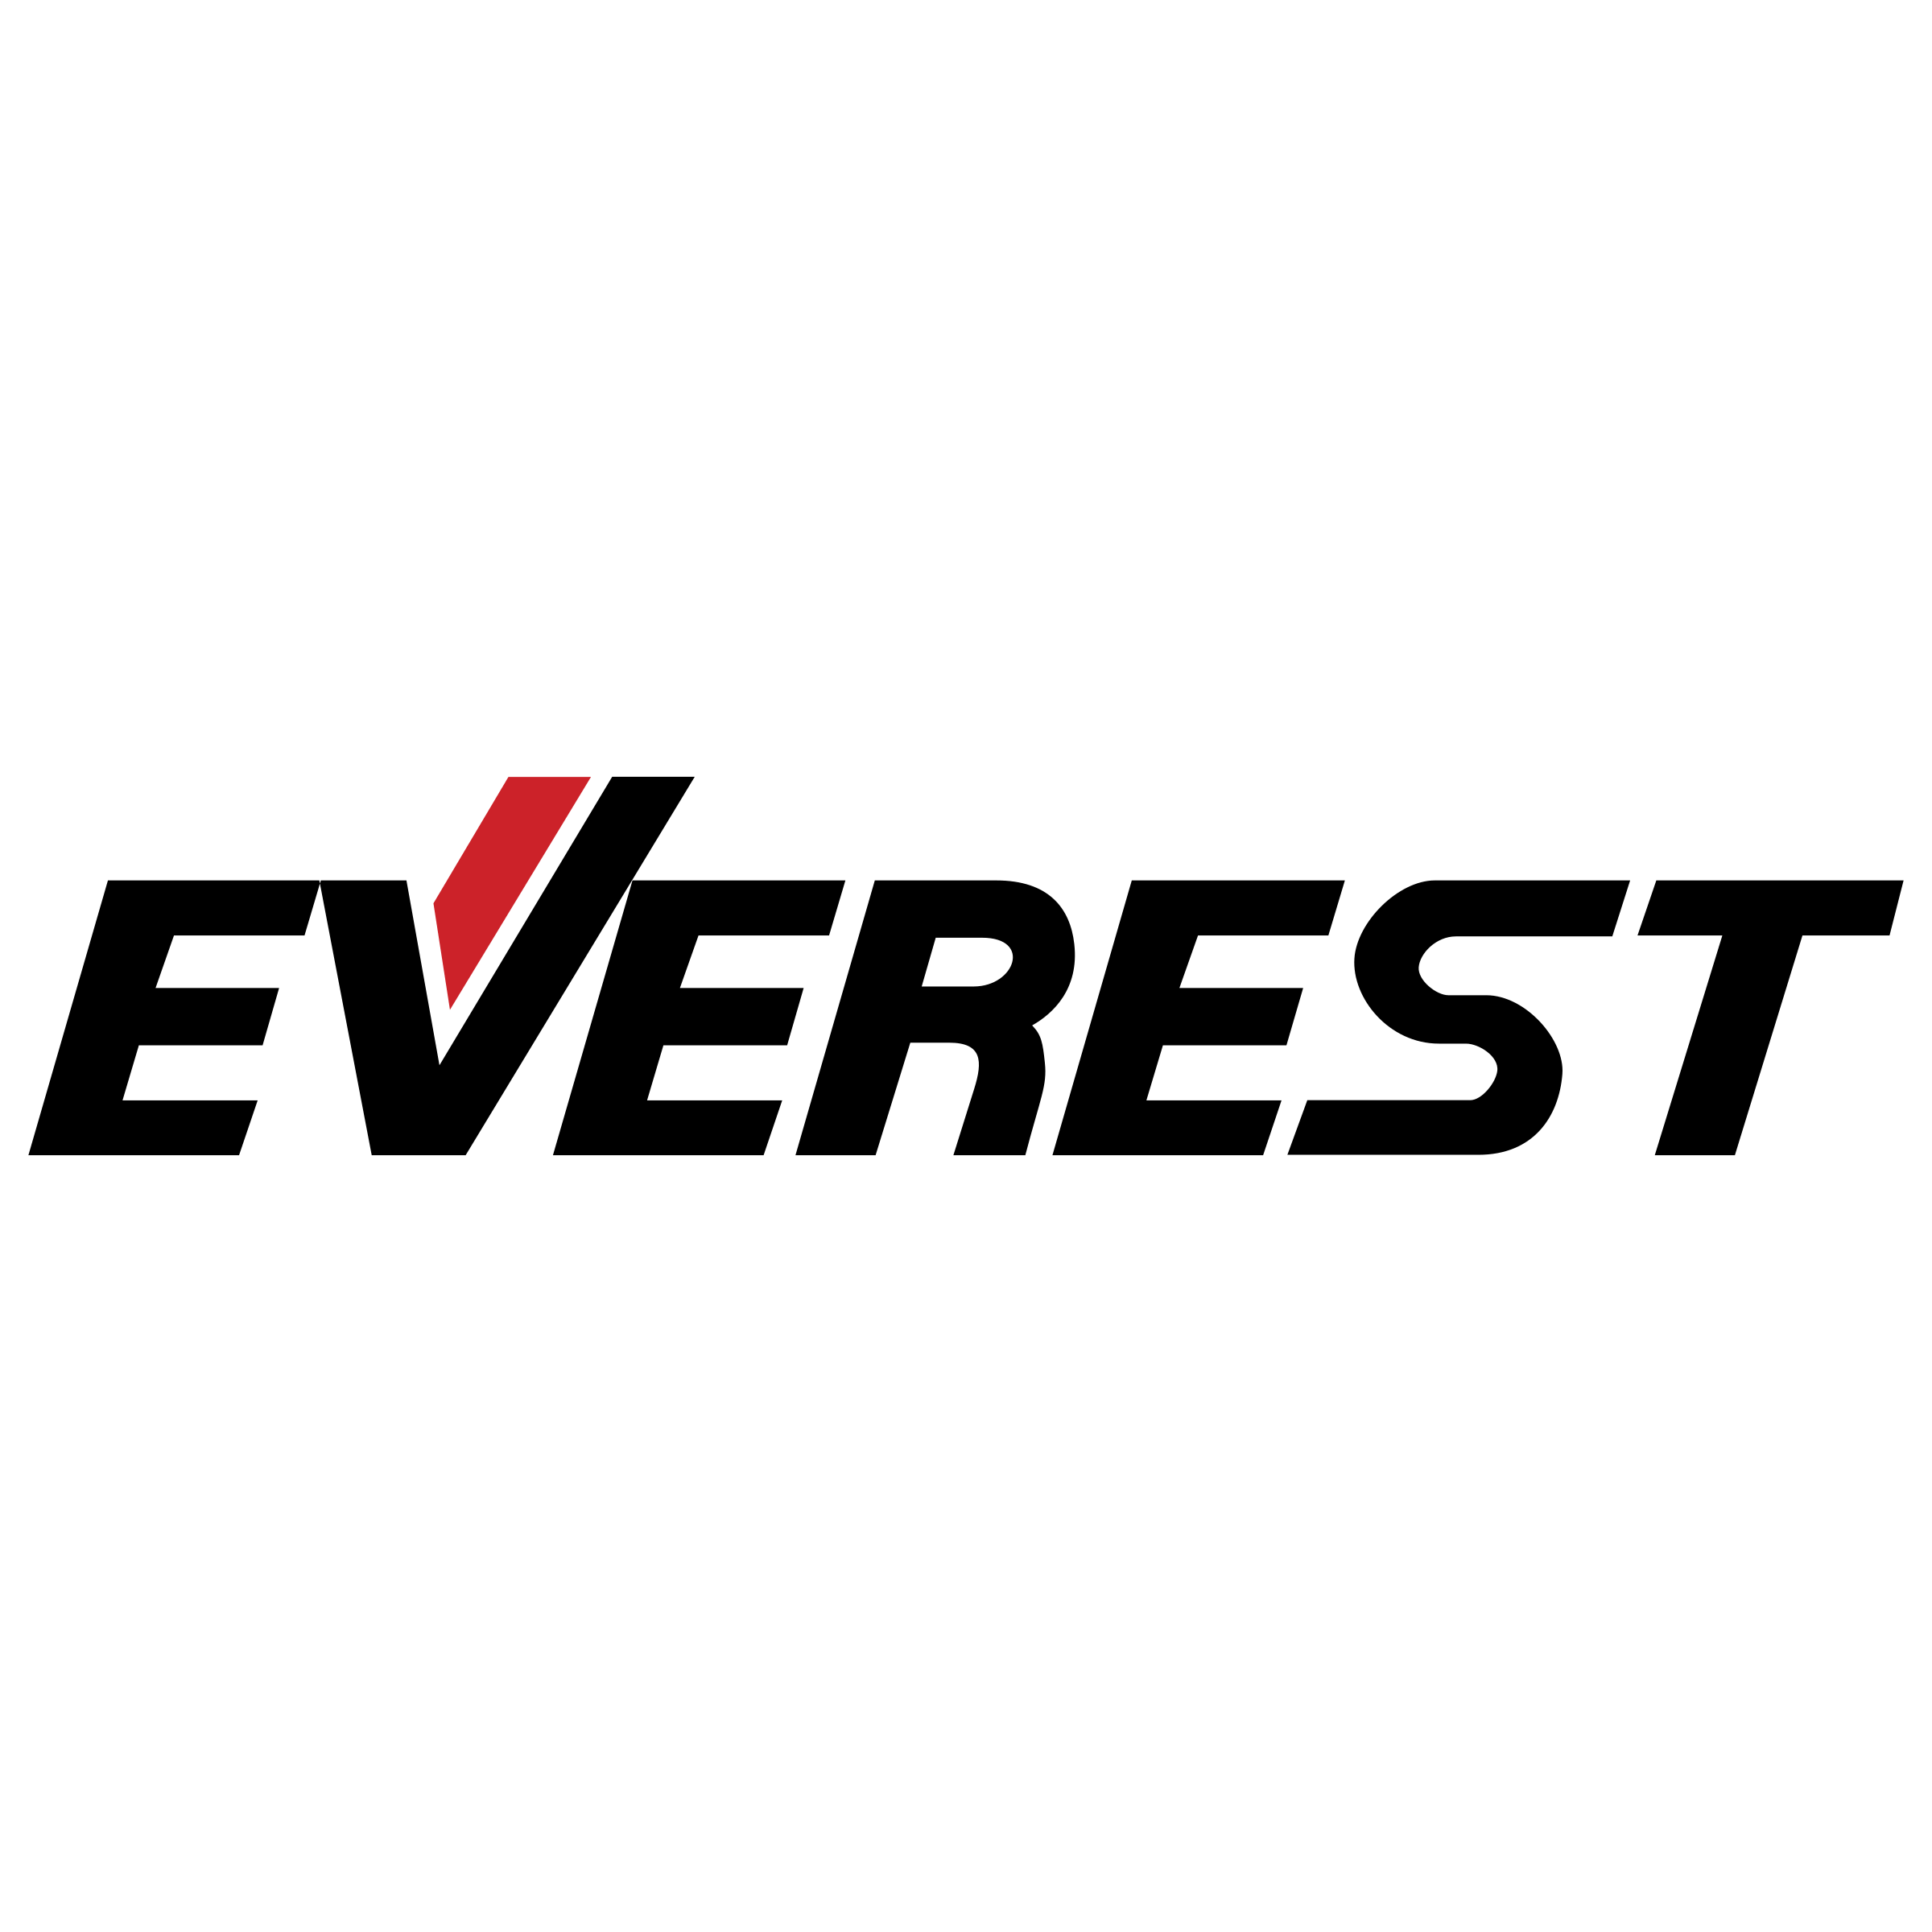 Everest Logo - Everest Logo PNG Transparent & SVG Vector - Freebie Supply